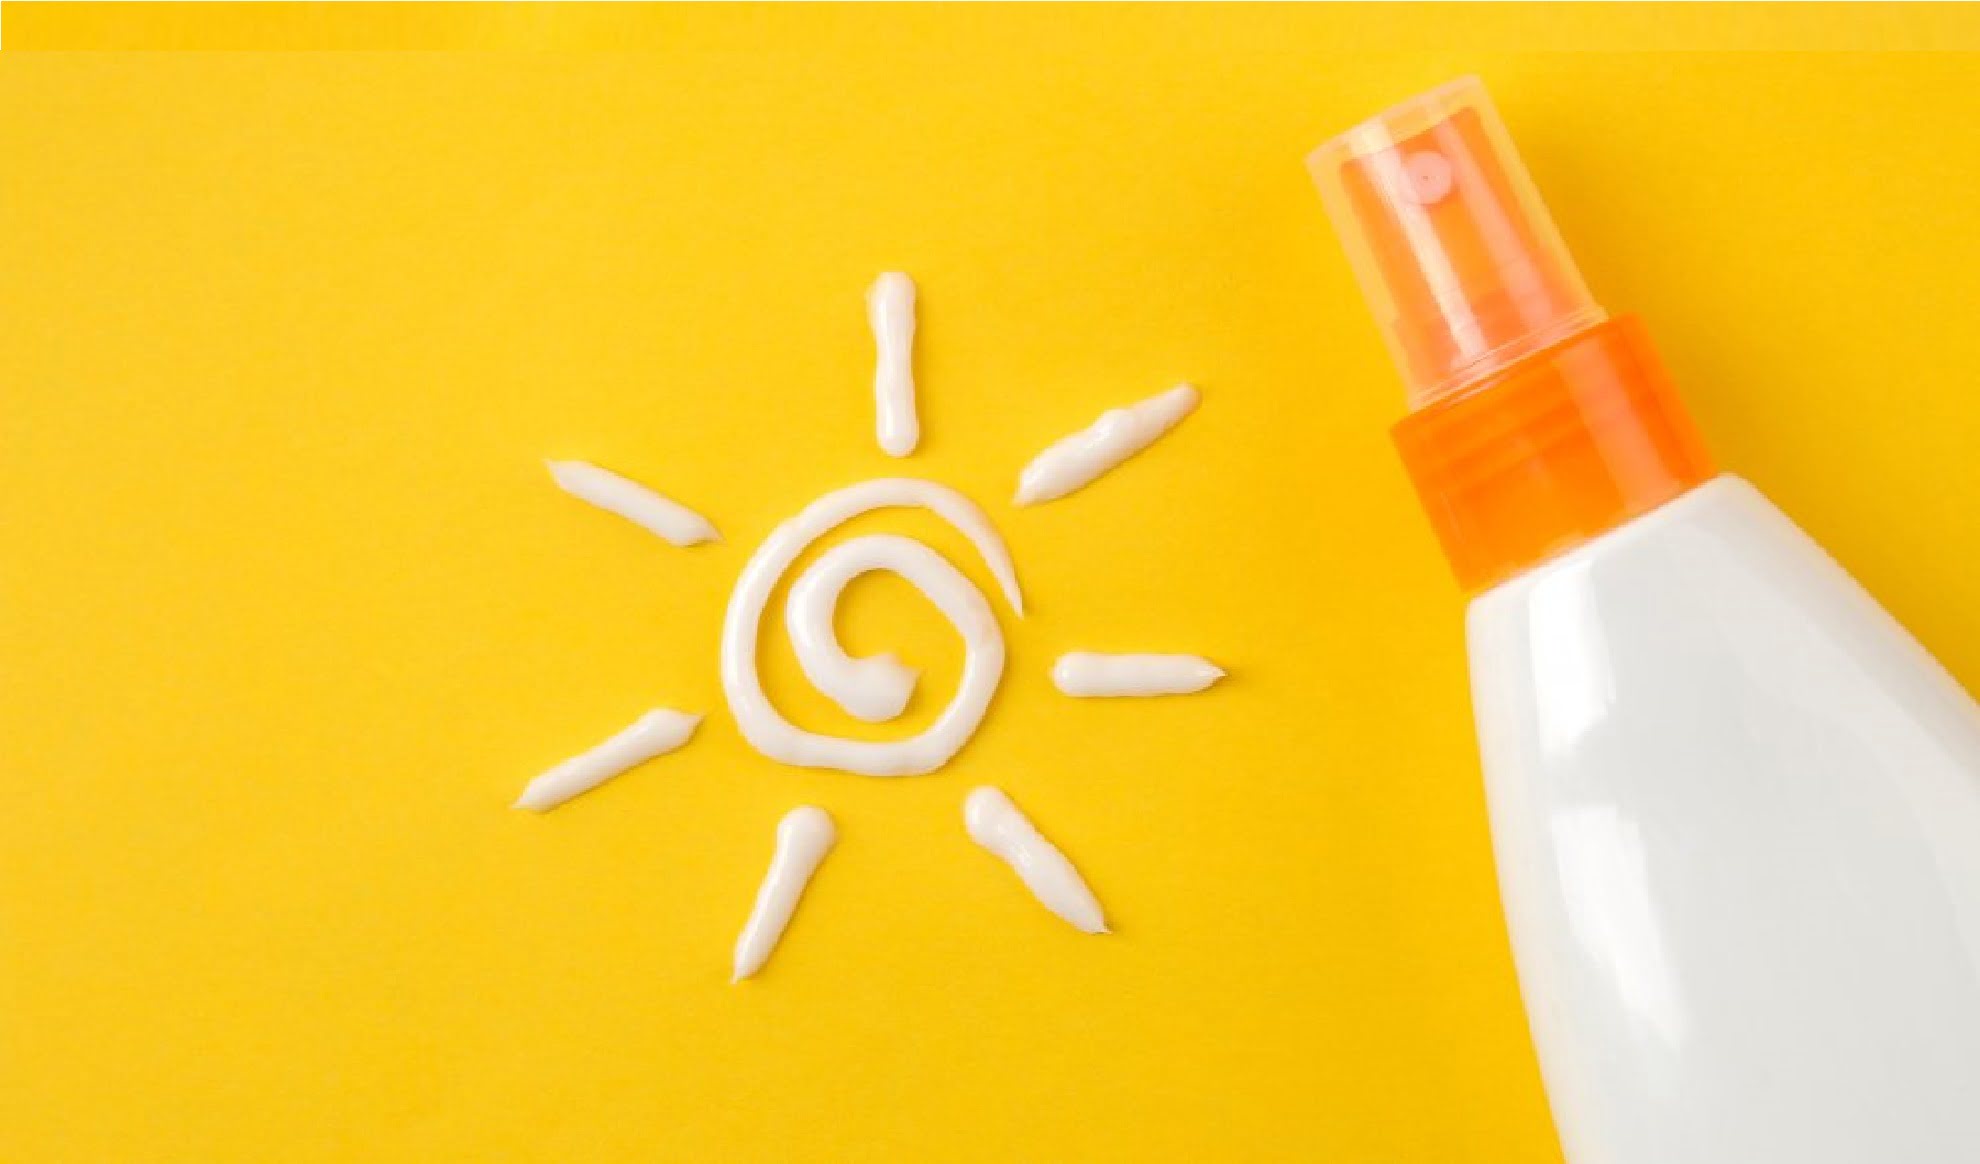 آیا لازم است در فصل های پاییز و زمستان از ضد آفتاب استفاده کنیم؟